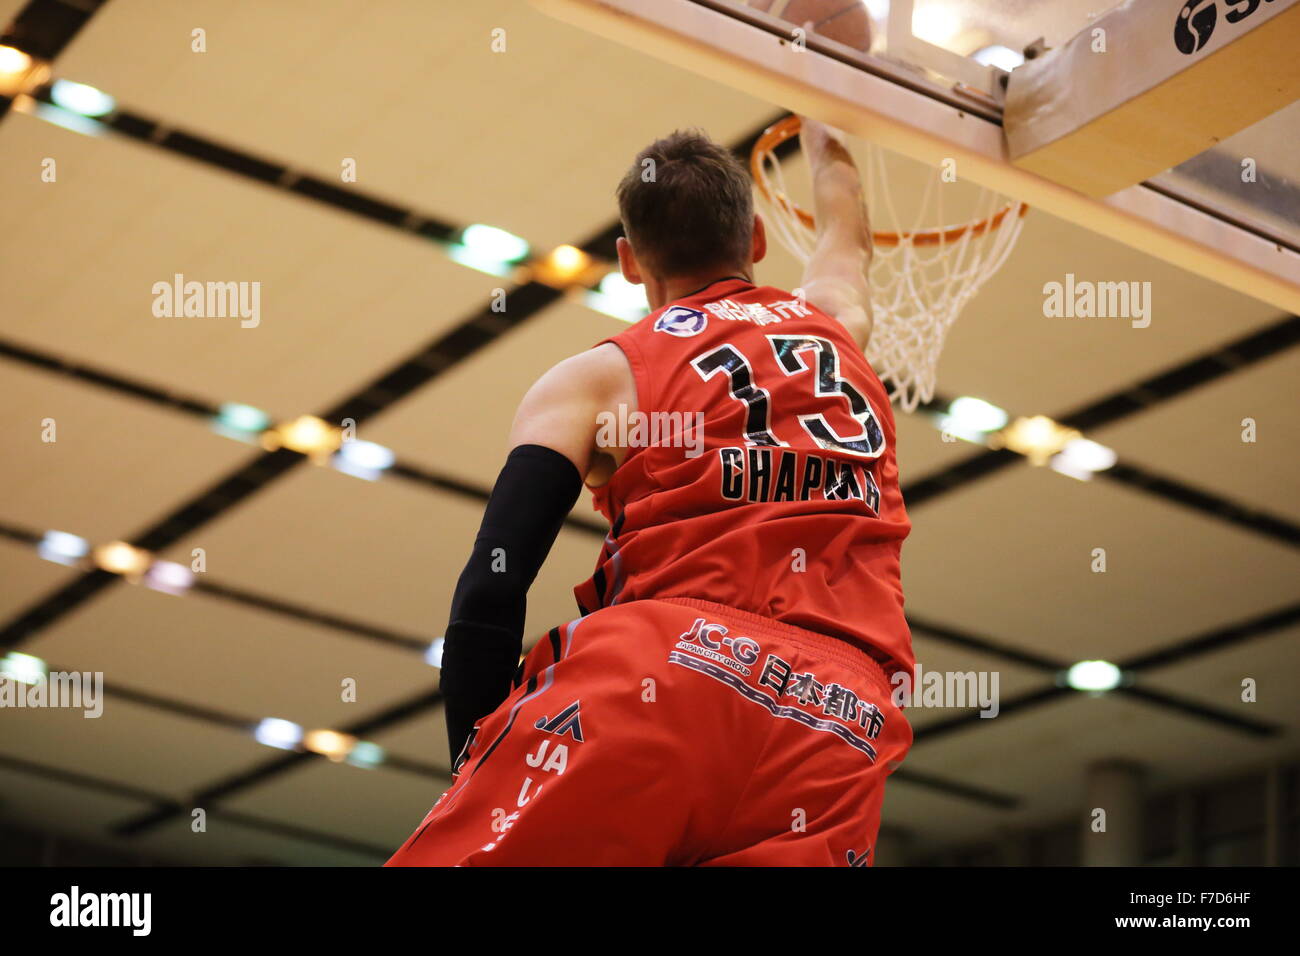 Liga de baloncesto de japon fotografías e imágenes de alta resolución -  Página 5 - Alamy